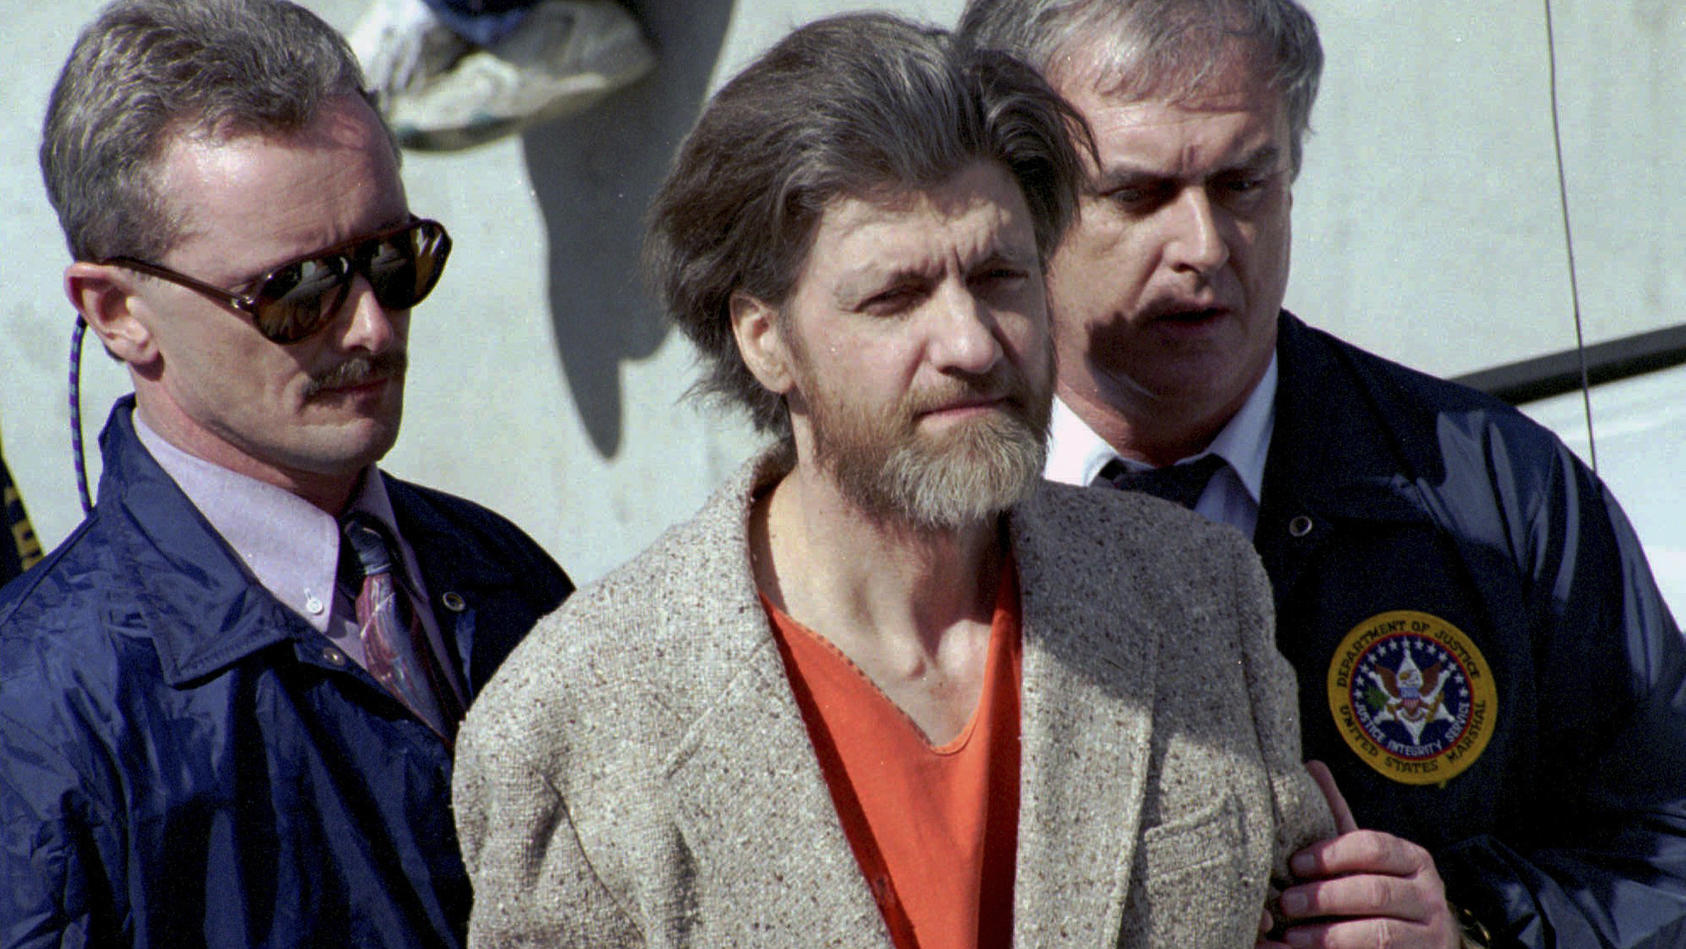 unabomber-ted-kaczynski-wurde-im-alter-von-81-jahren-tot-in-seiner-zelle-aufgefunden